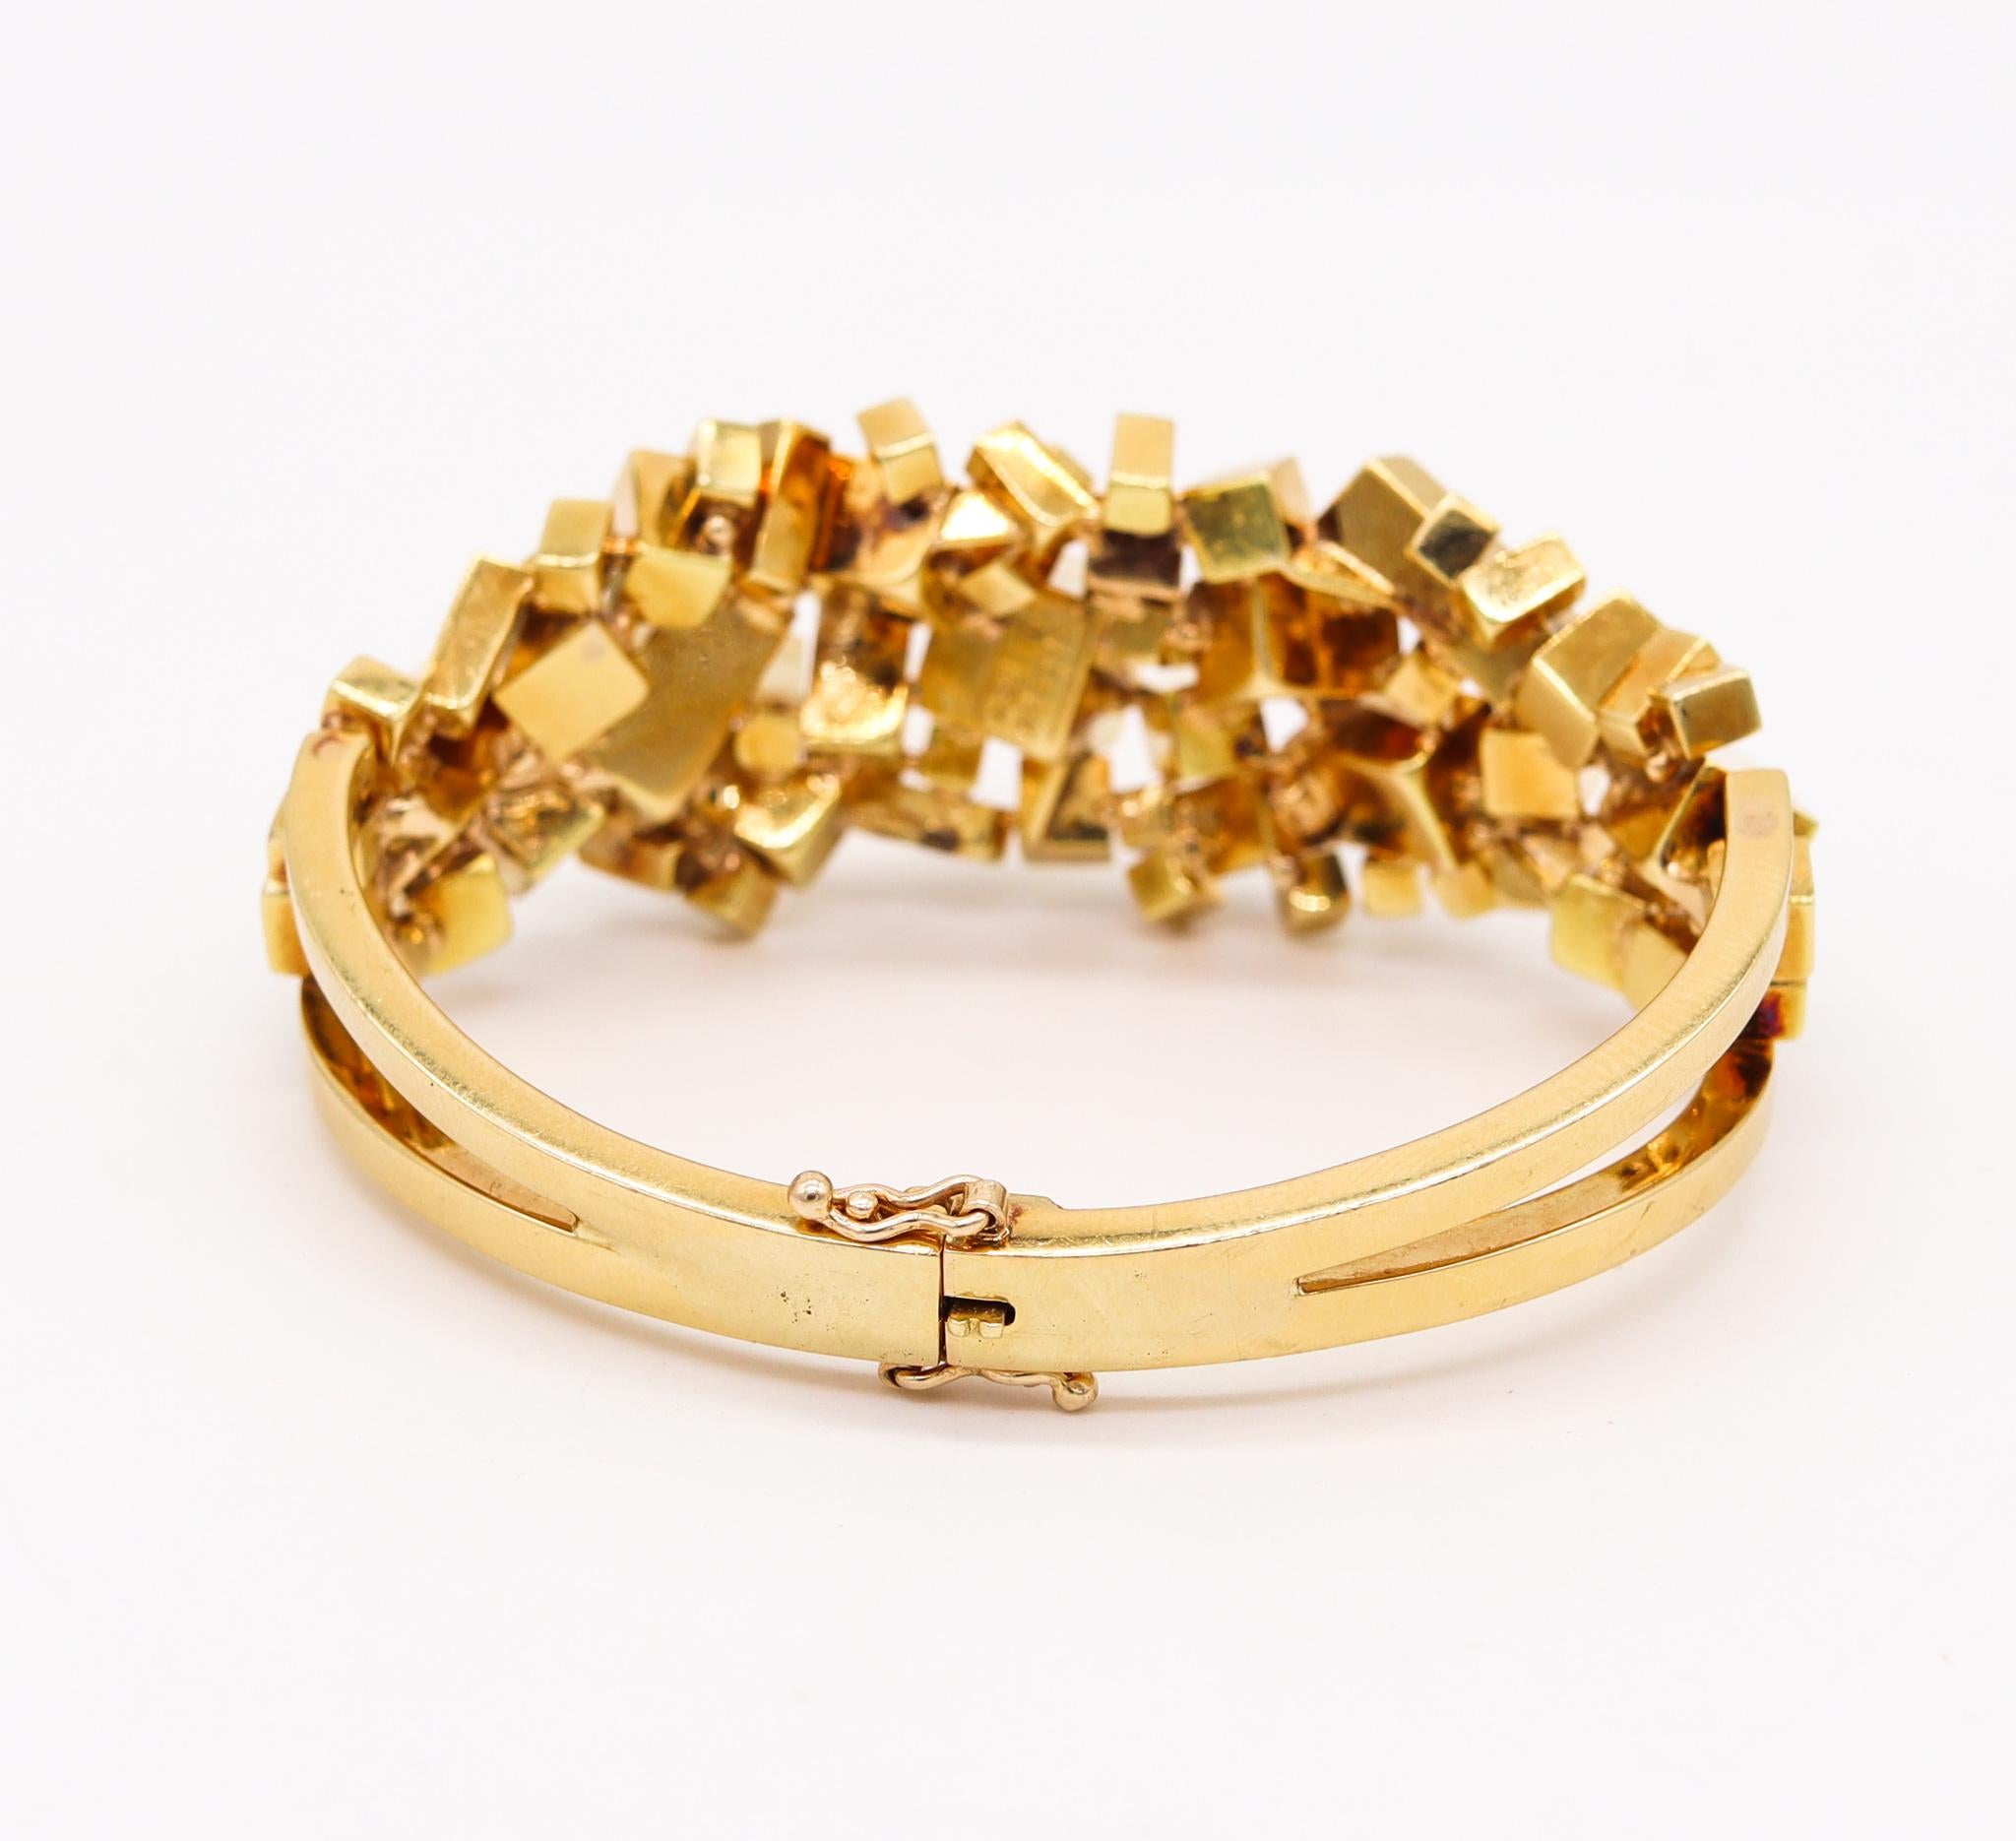 Modernist Alfred Karram 1970 New York Brutalism Geometric Cubic Bracelet In 18Kt Gold